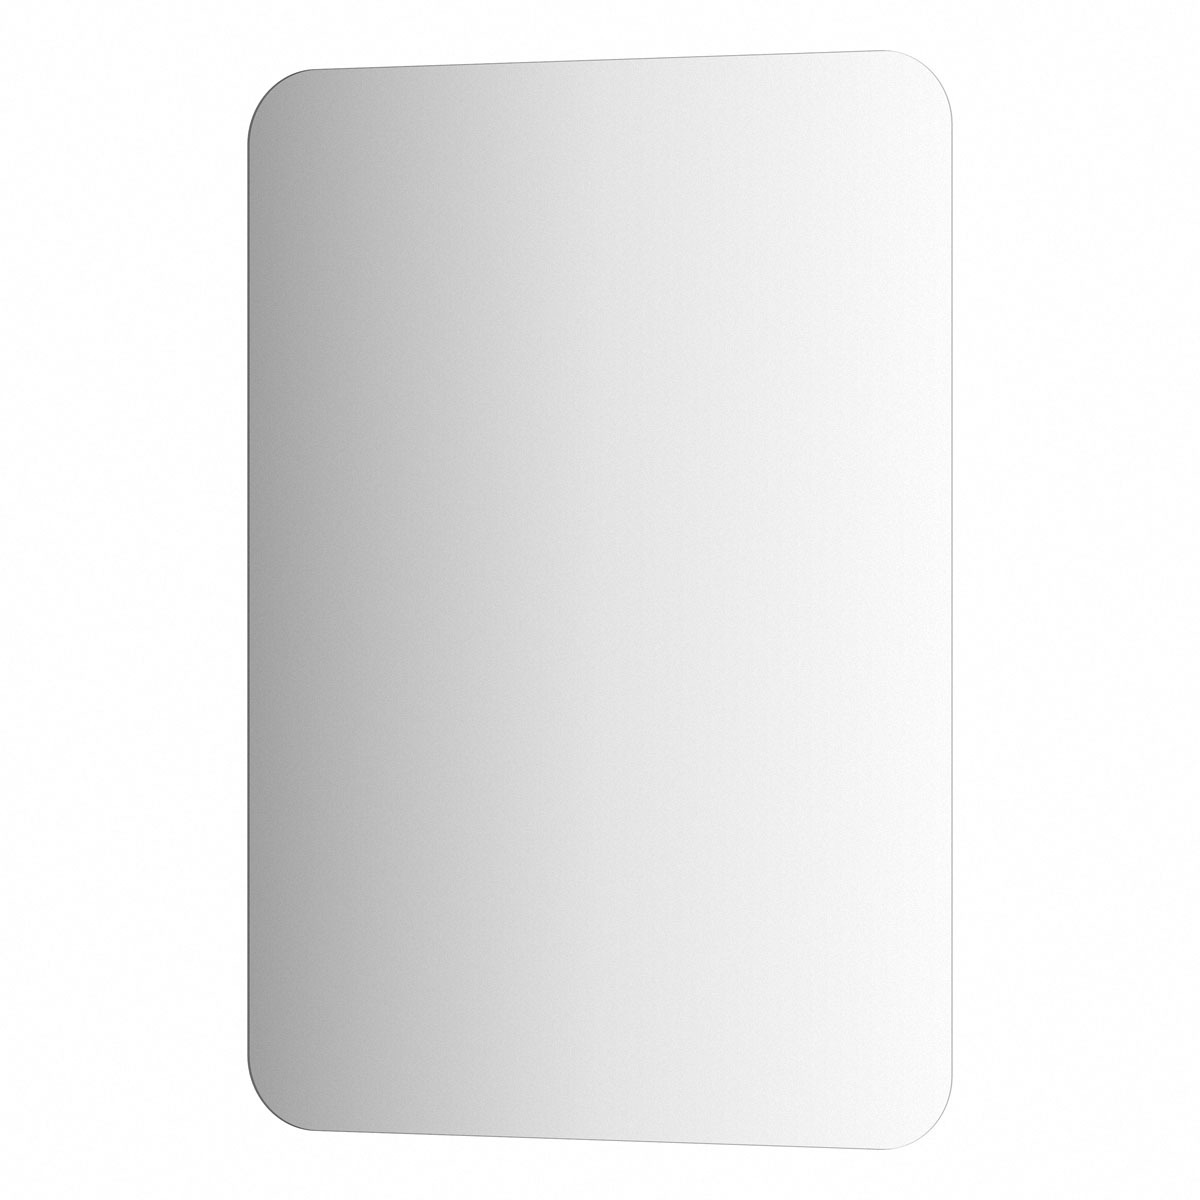 Зеркало Evoform со шлифованной кромкой 70х100 см - фото 1